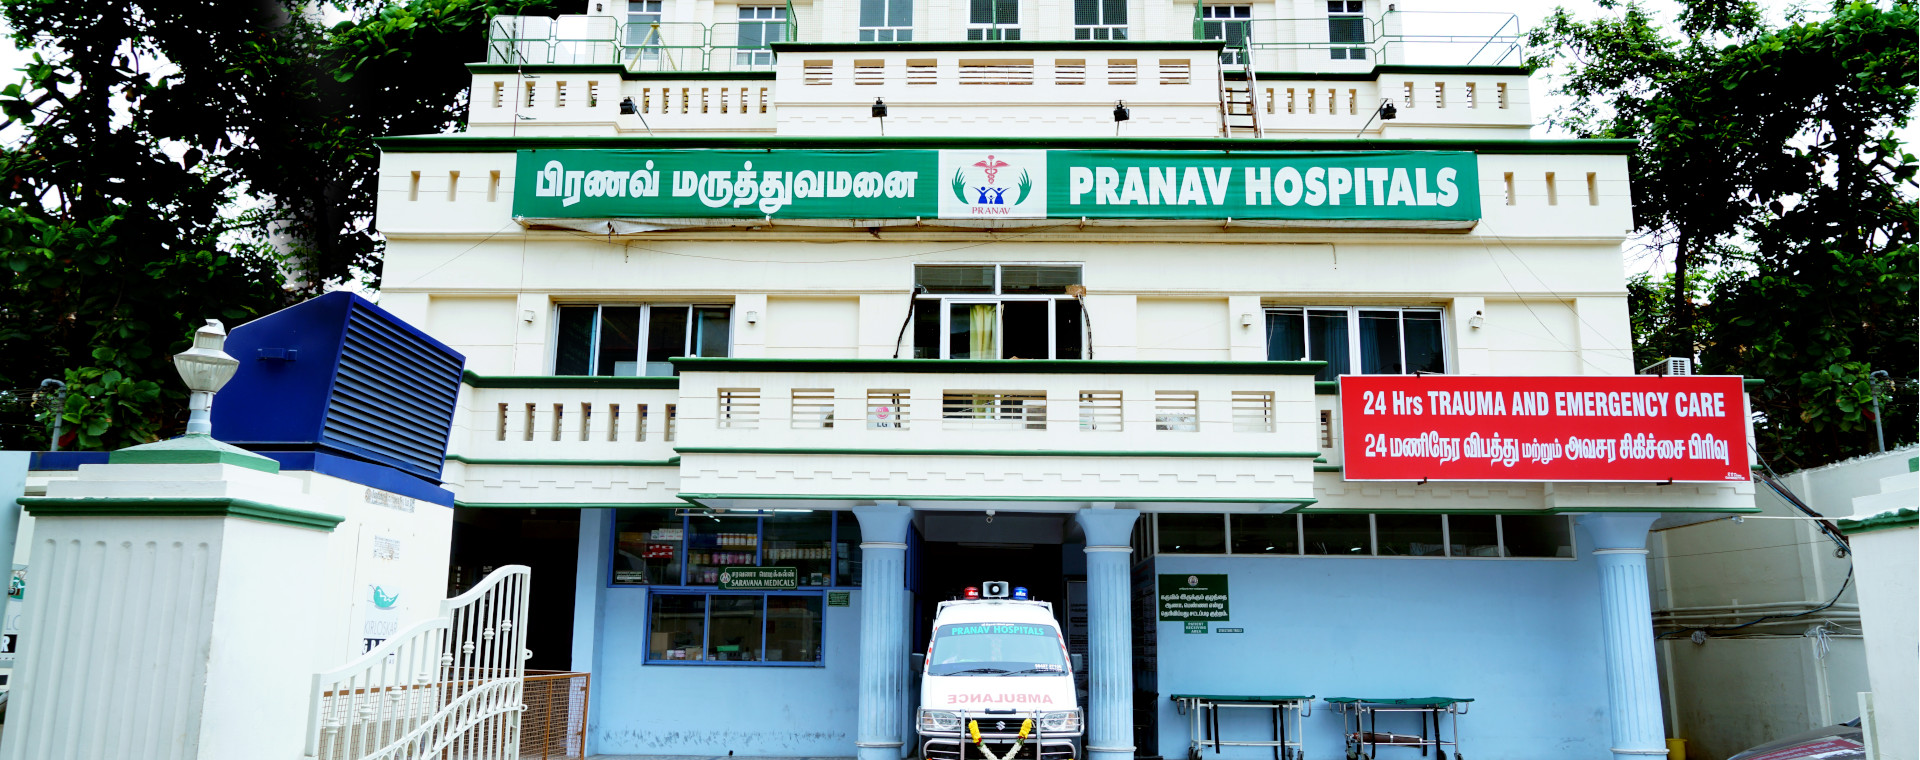 Pranav Hospital Medical Services | Hospitals